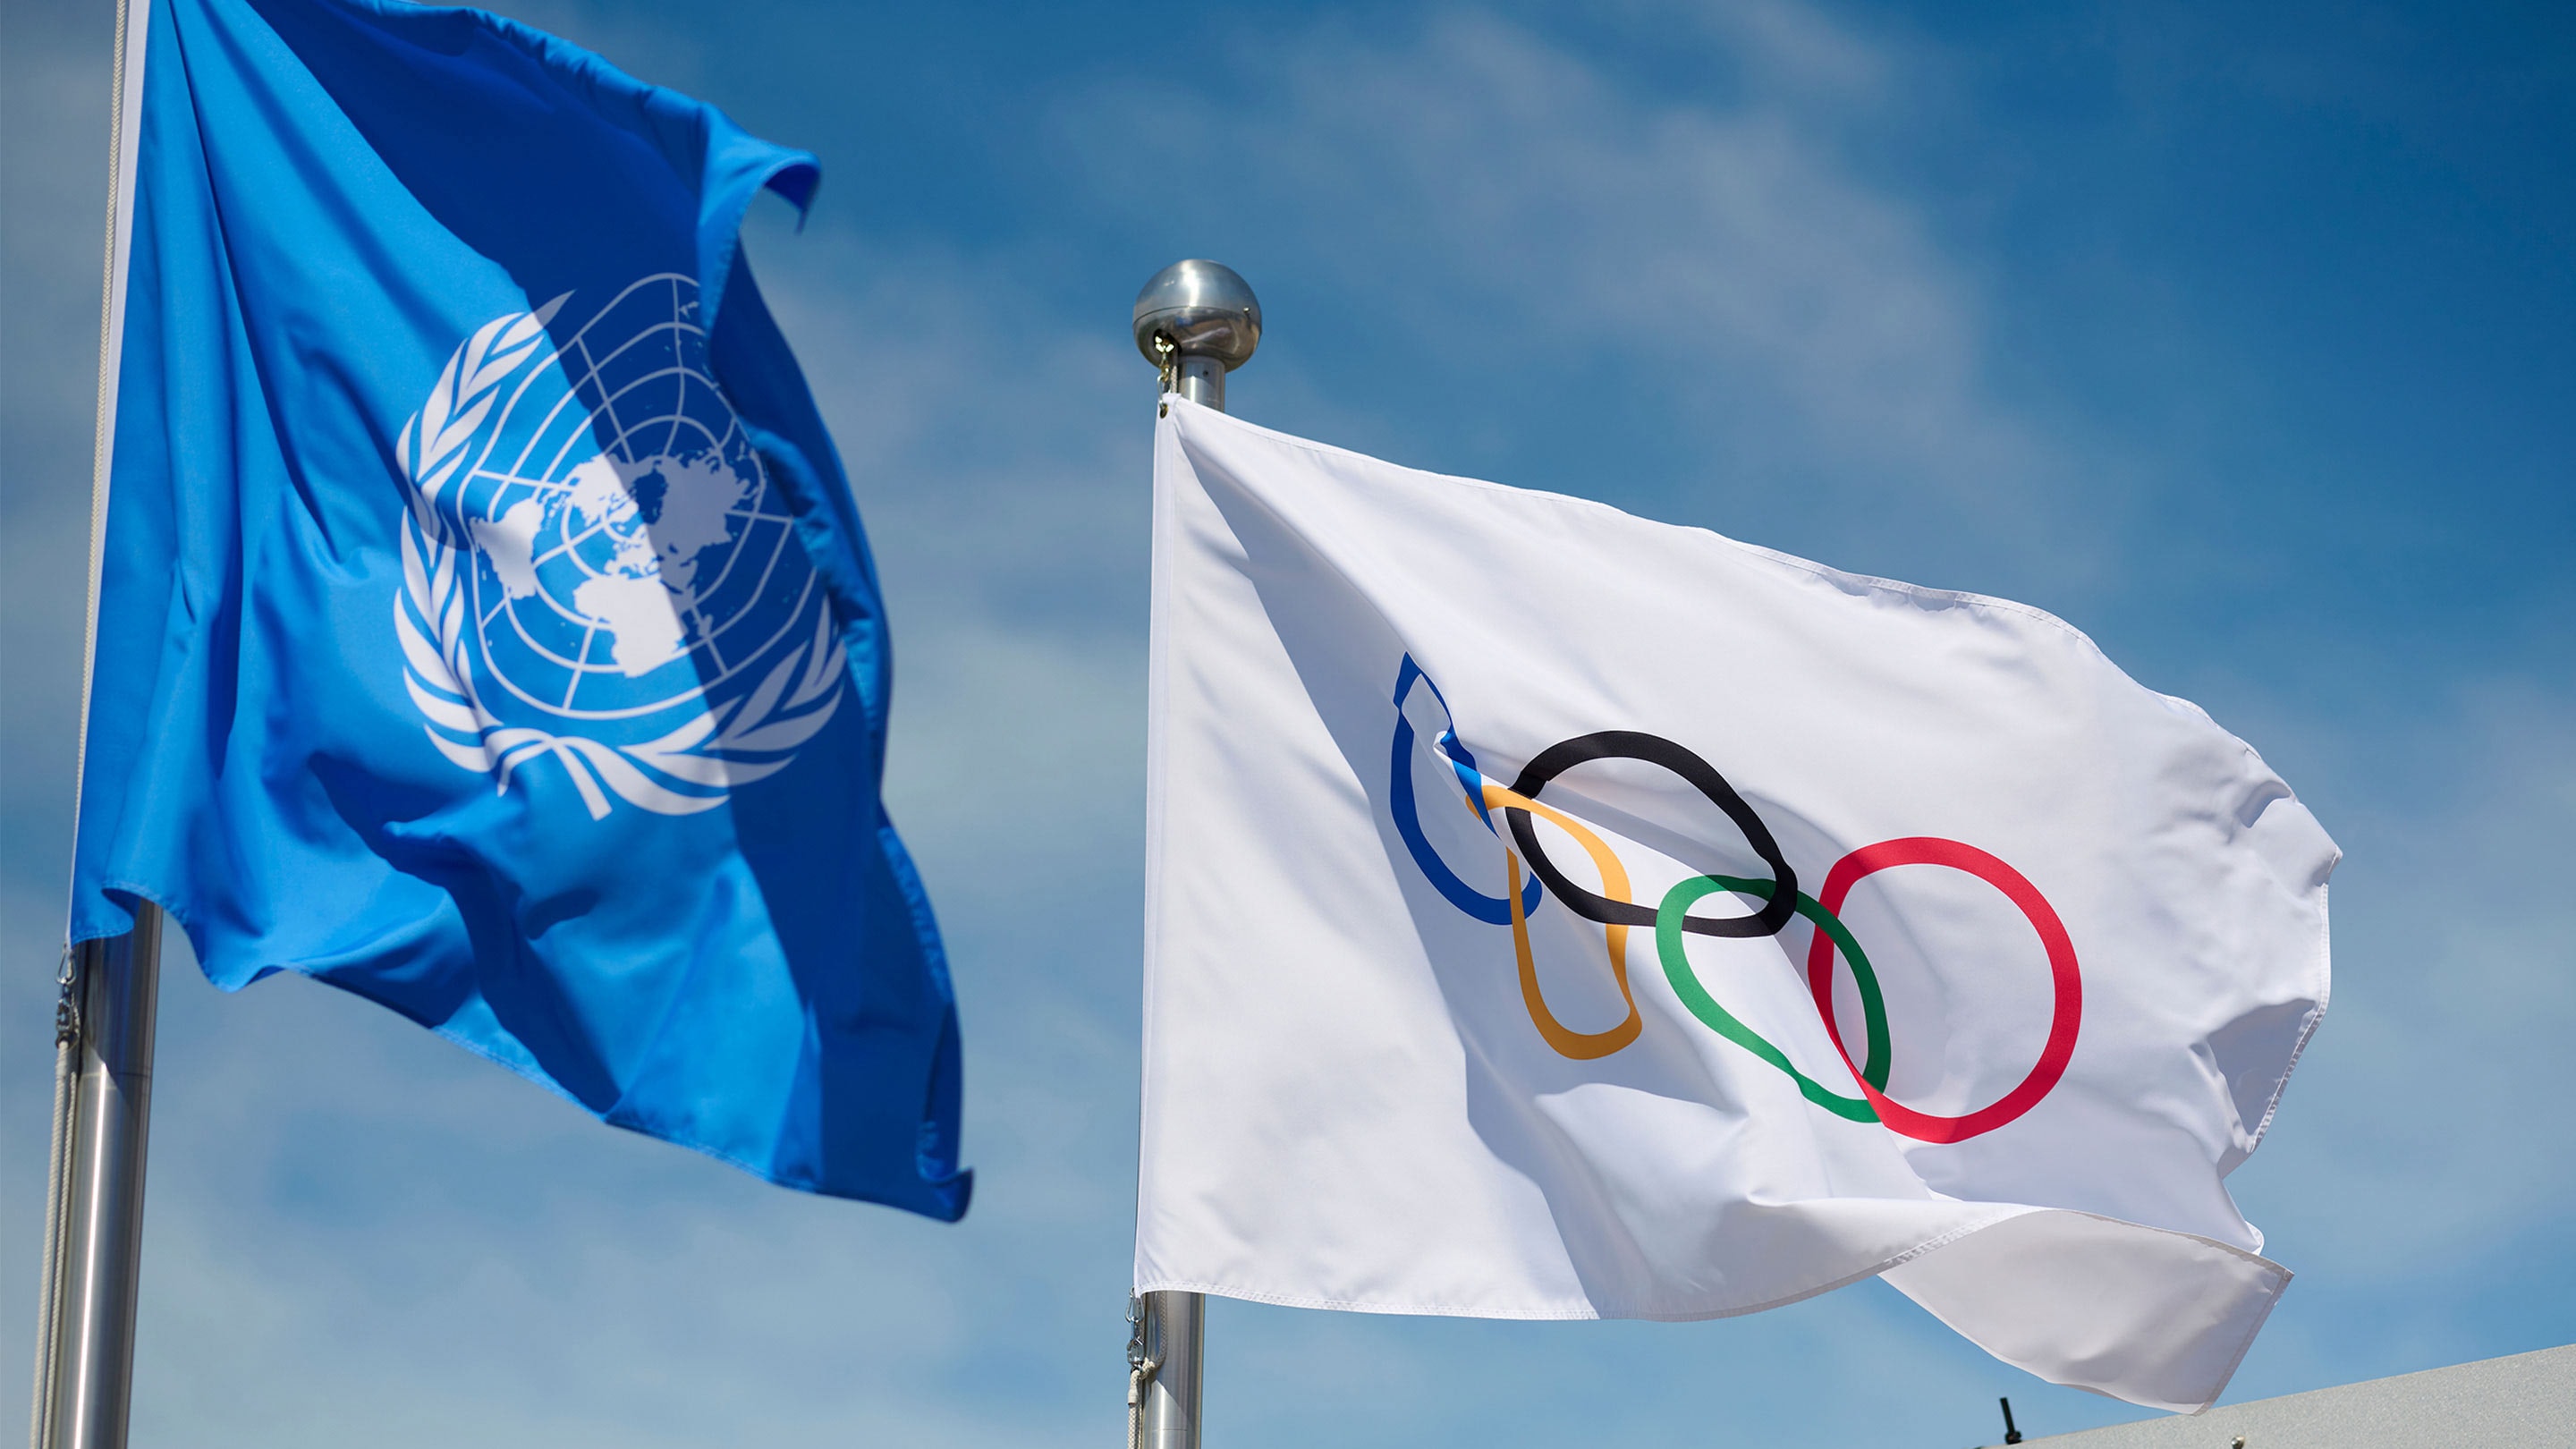 Наш голос о необходимости сохранения единства спорта услышан и в ООН. Генеральная Ассамблея ООН выступила против политизации спорта и дискриминации атлетов. 